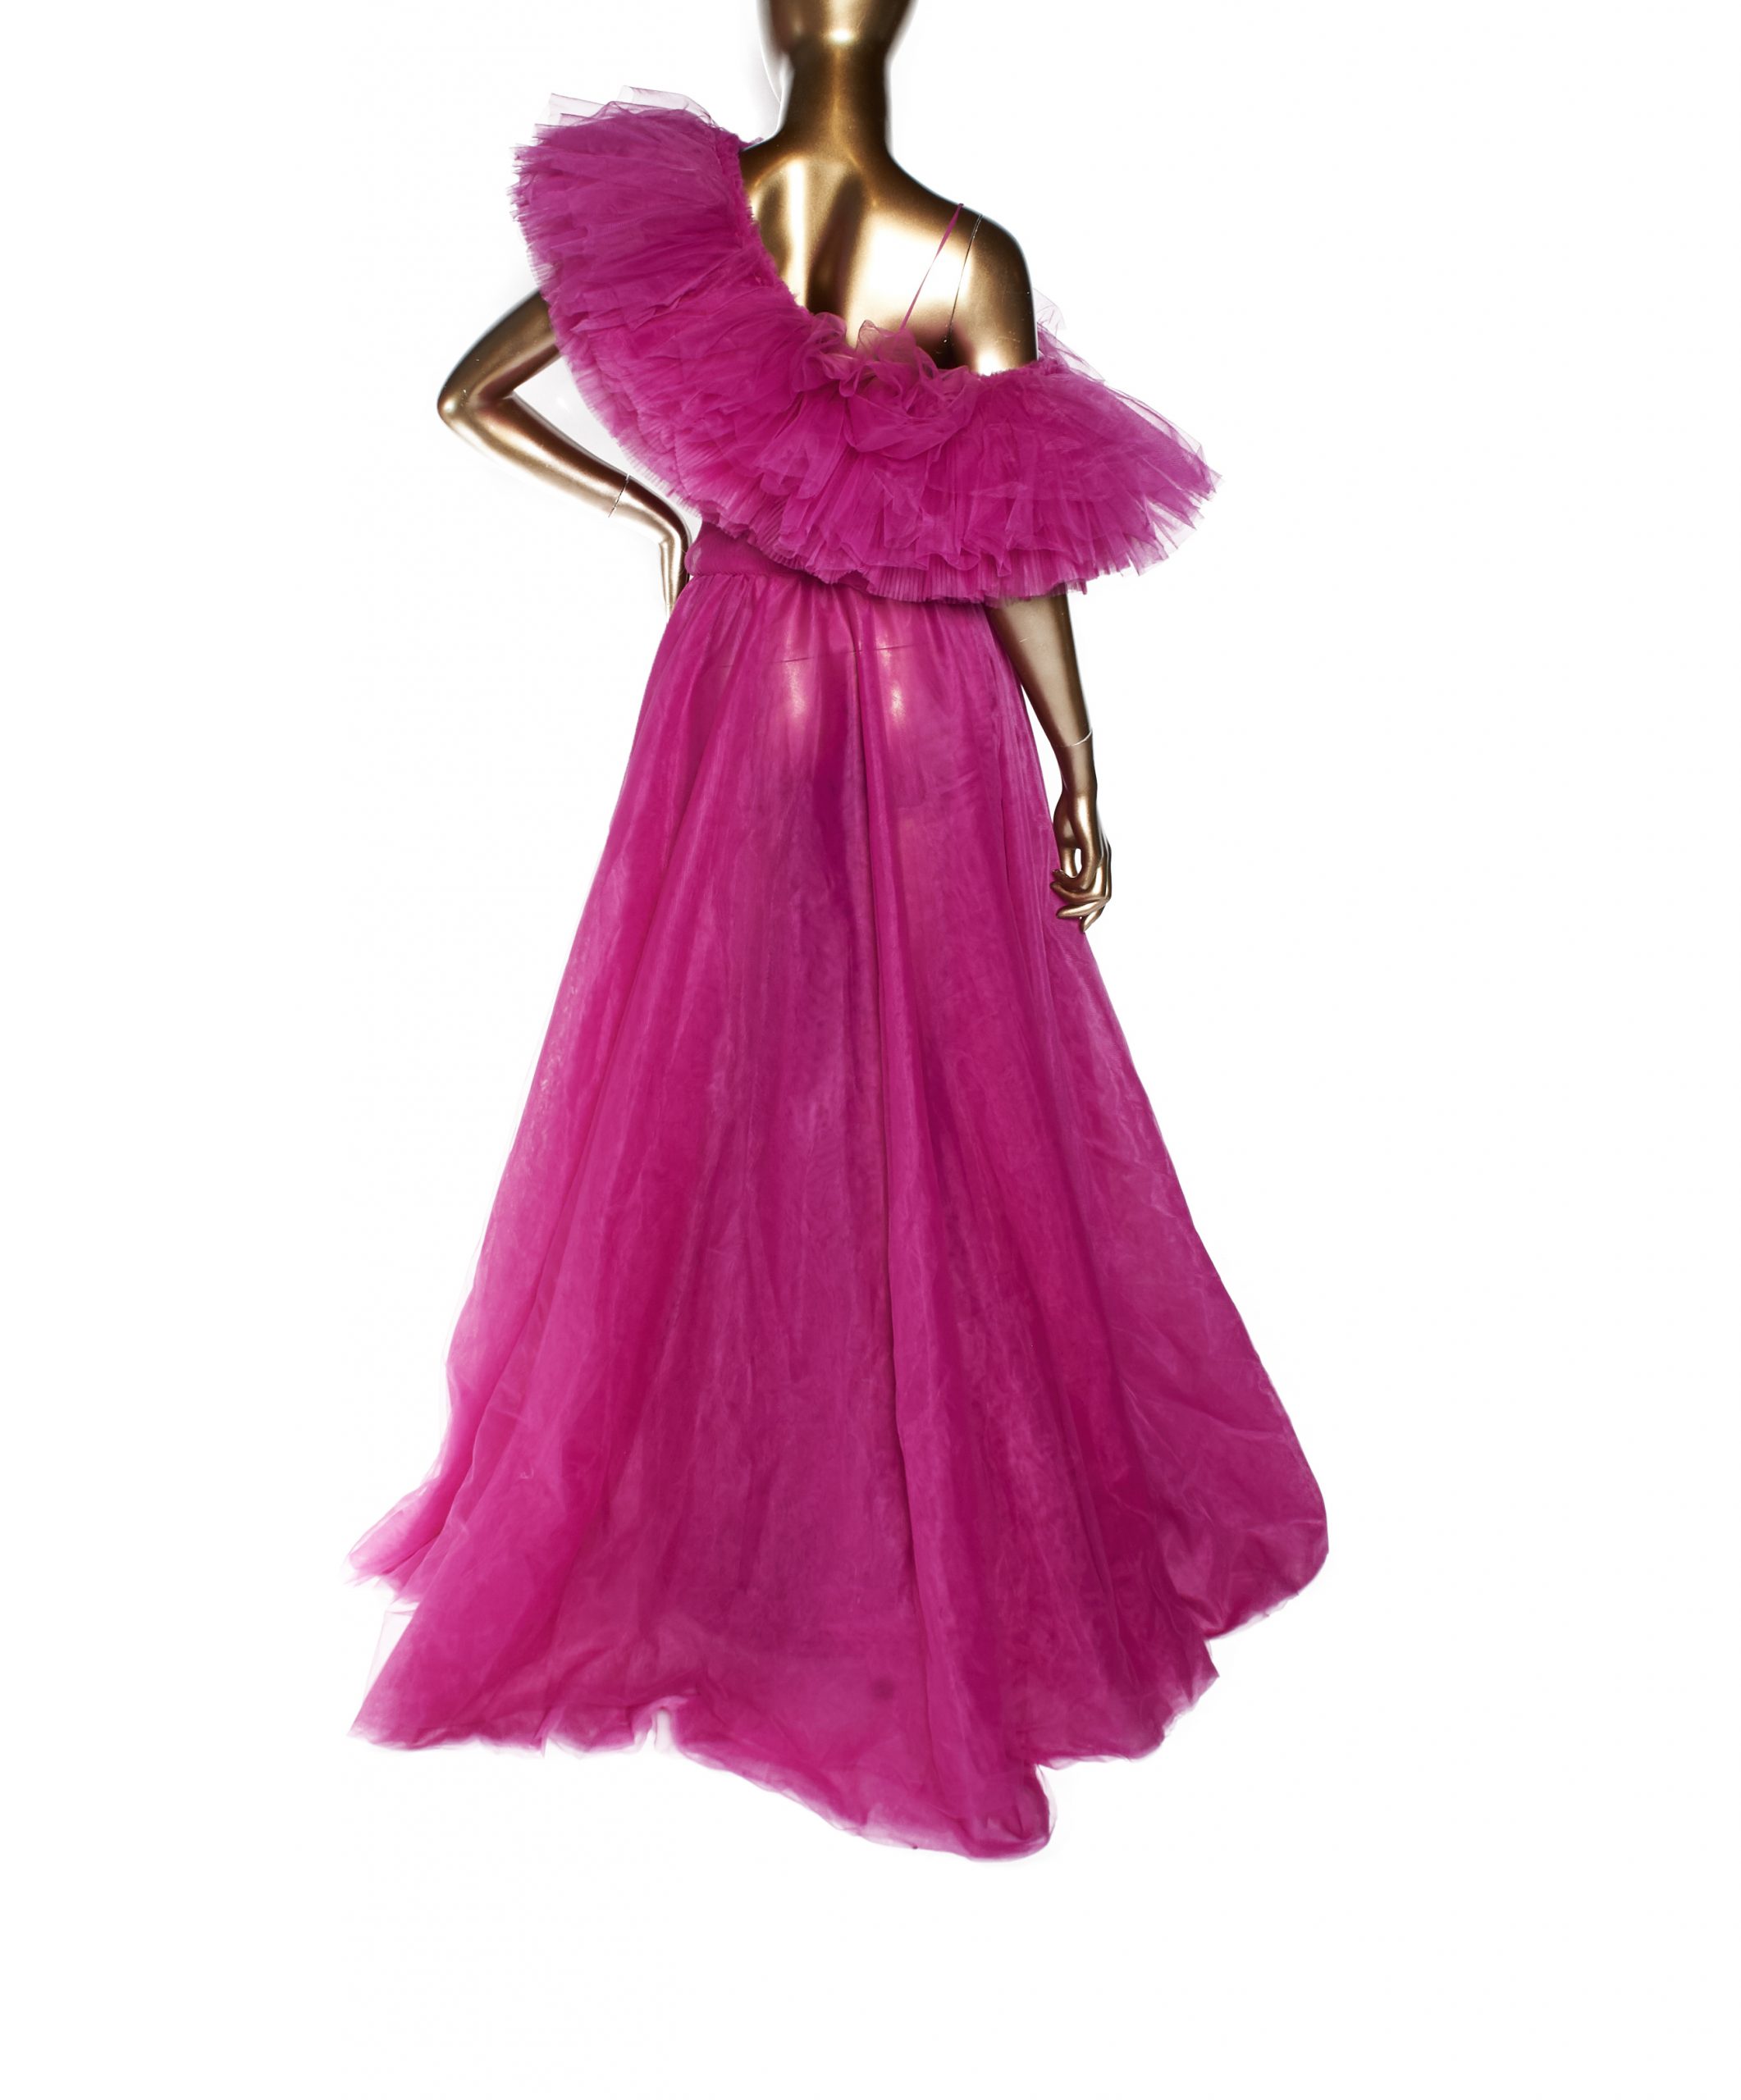 Sudi Etuz Pink Ruffle Dress - Janet Mandell